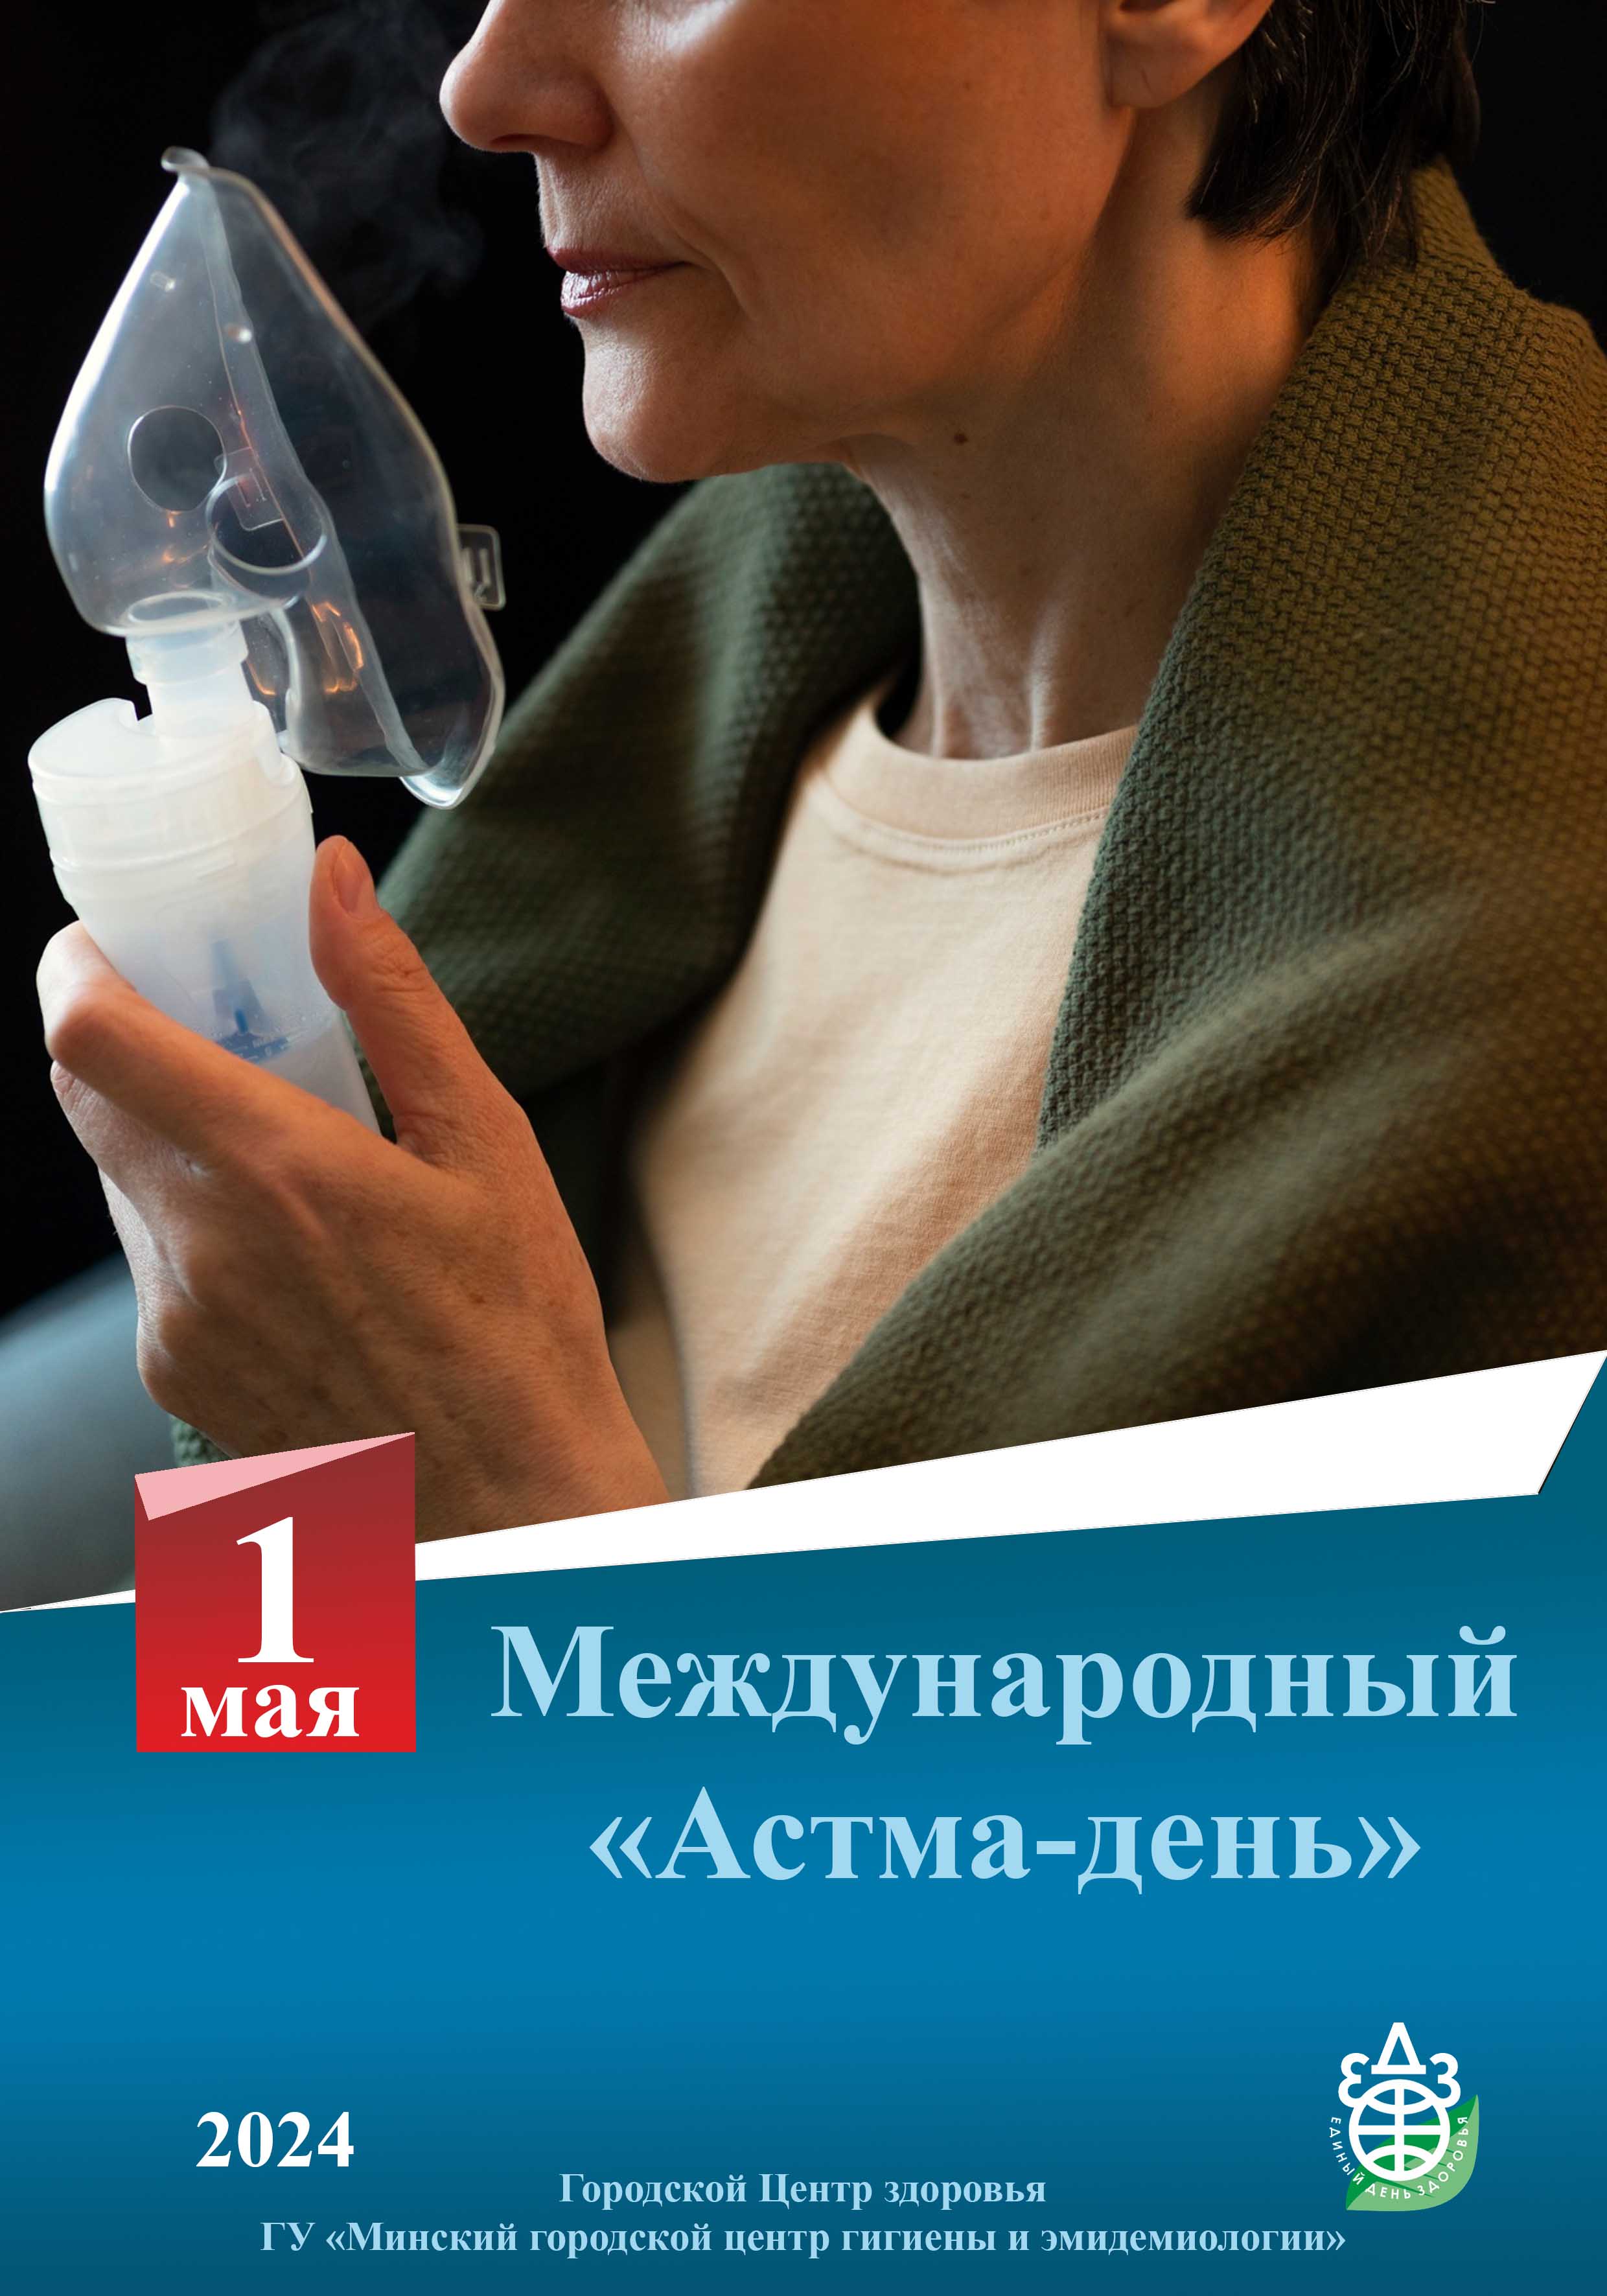 1 мая астма